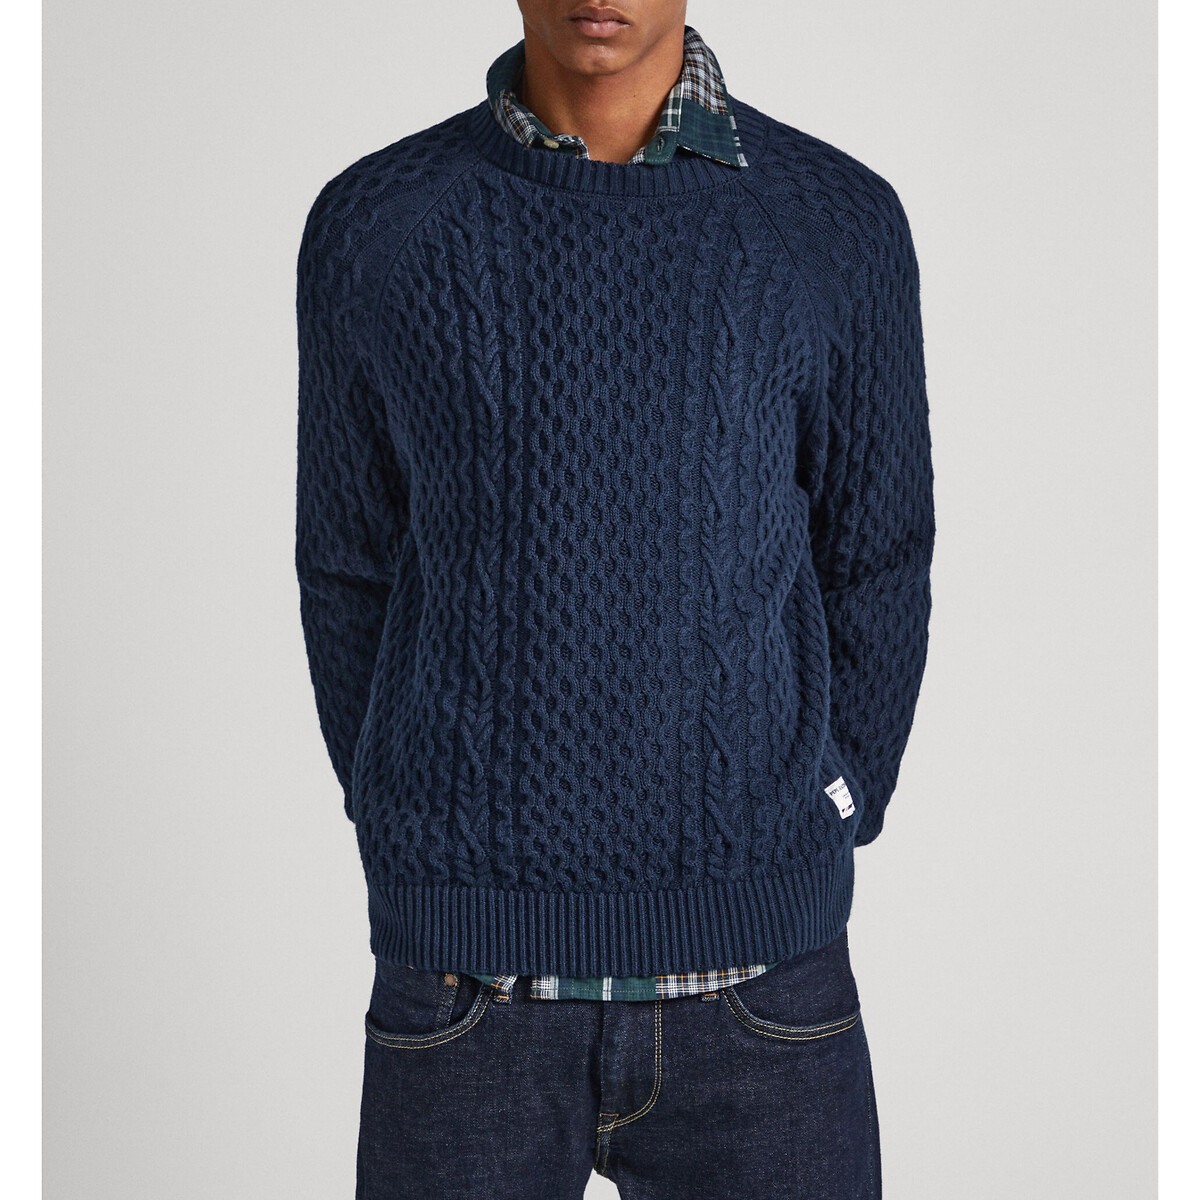 Пуловер с круглым вырезом из текстурированного трикотажа M синий пуловер с круглым вырезом из трикотажа с узором косы m оранжевый